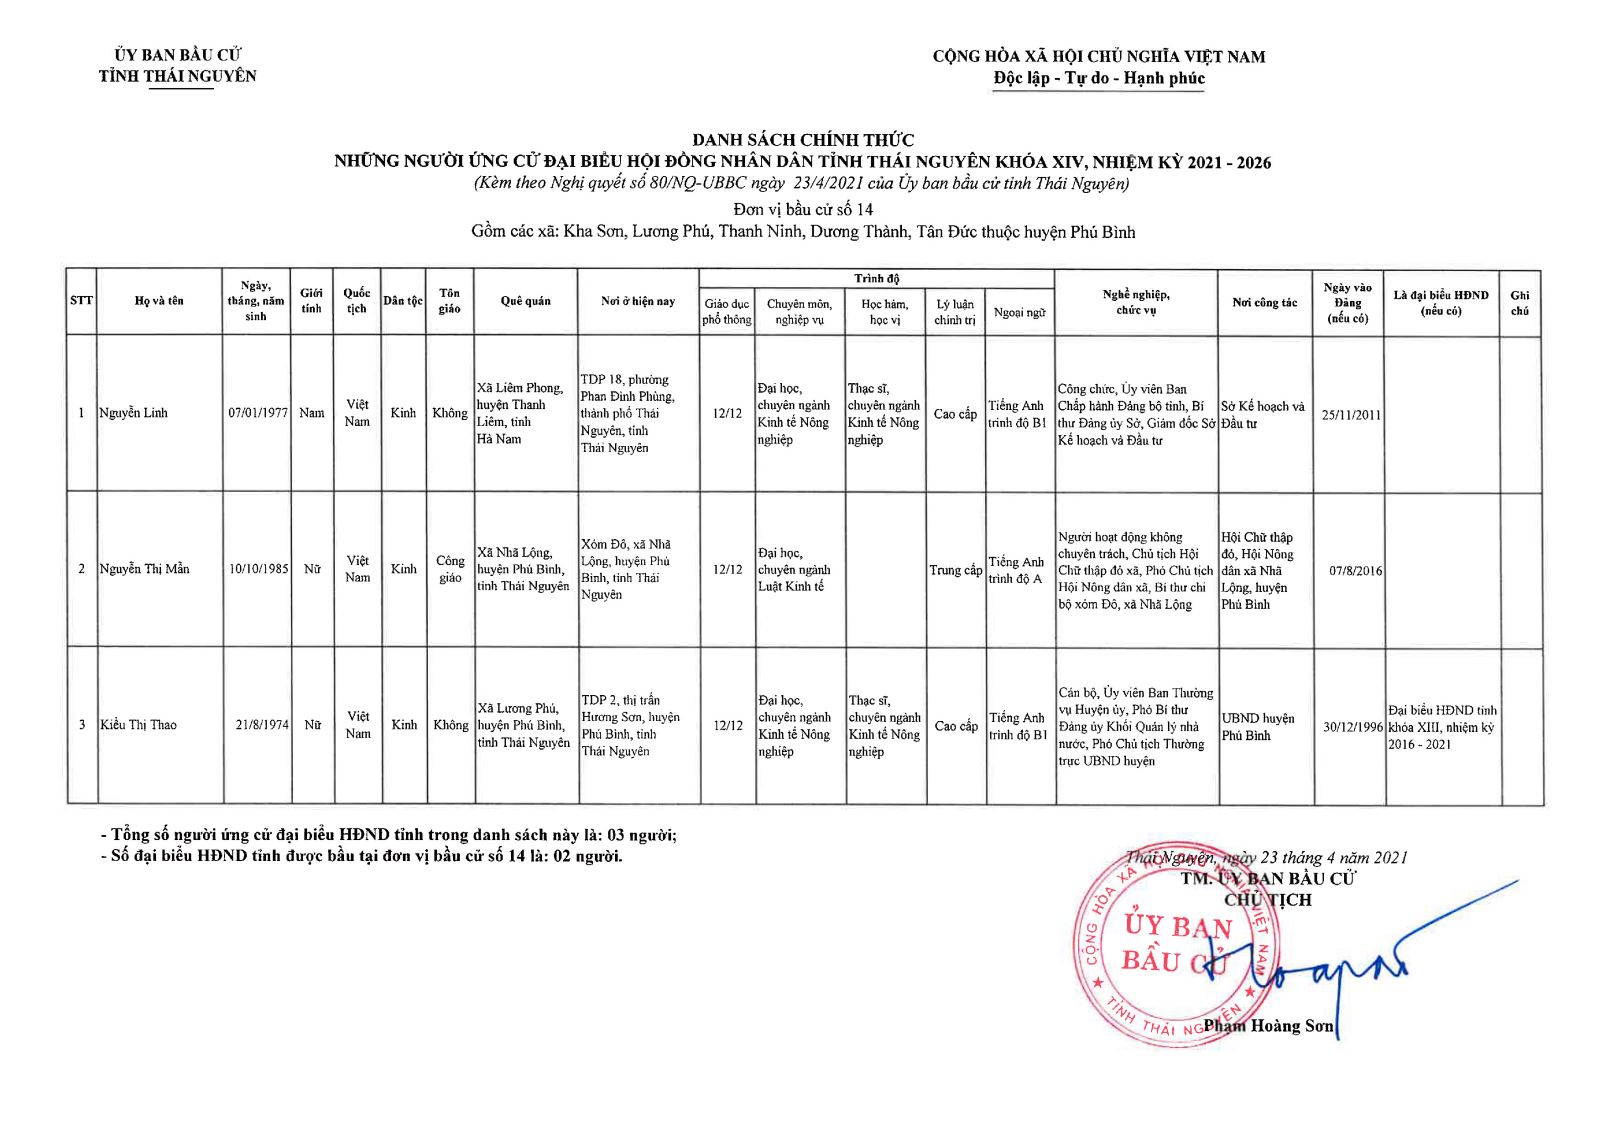 Danh sách chính thức những người ứng cử đại biểu Hội đồng nhân dân tỉnh Thái Nguyên khóa XIV, nhiệm kỳ 2021 - 2026 -4